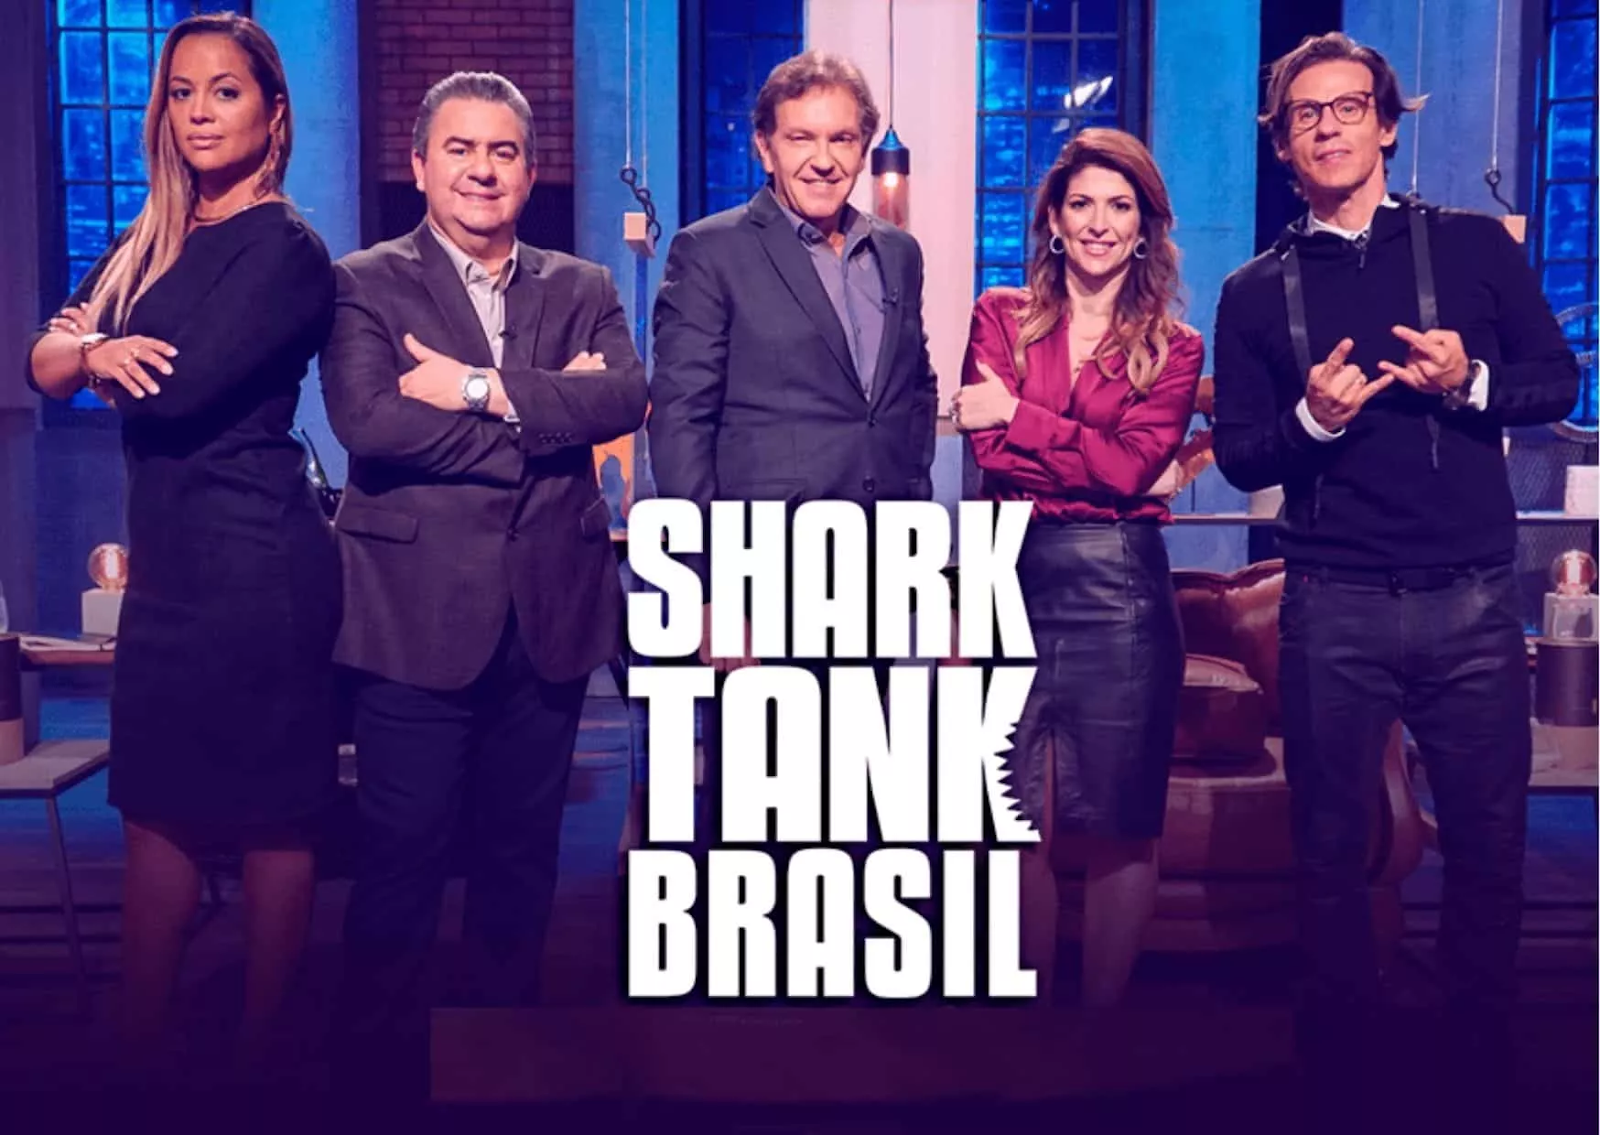 Shark Tank Brasil: entenda como funciona o programa para